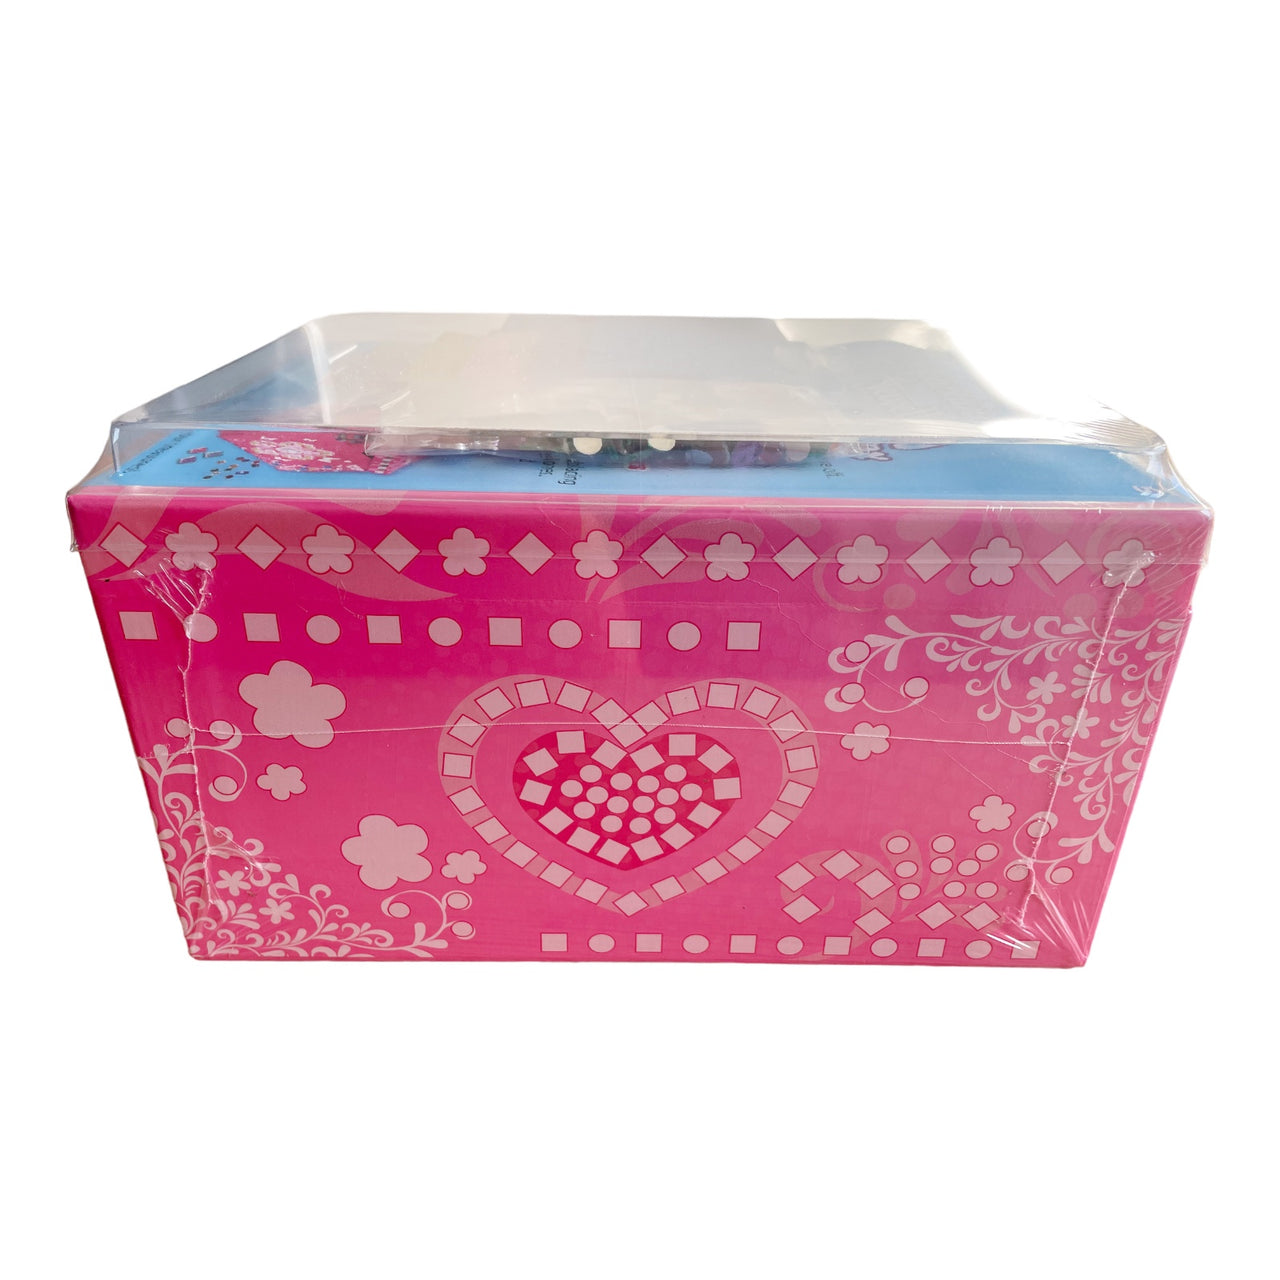 GL Style Mosaic Jewellery Box - Pink GL Style